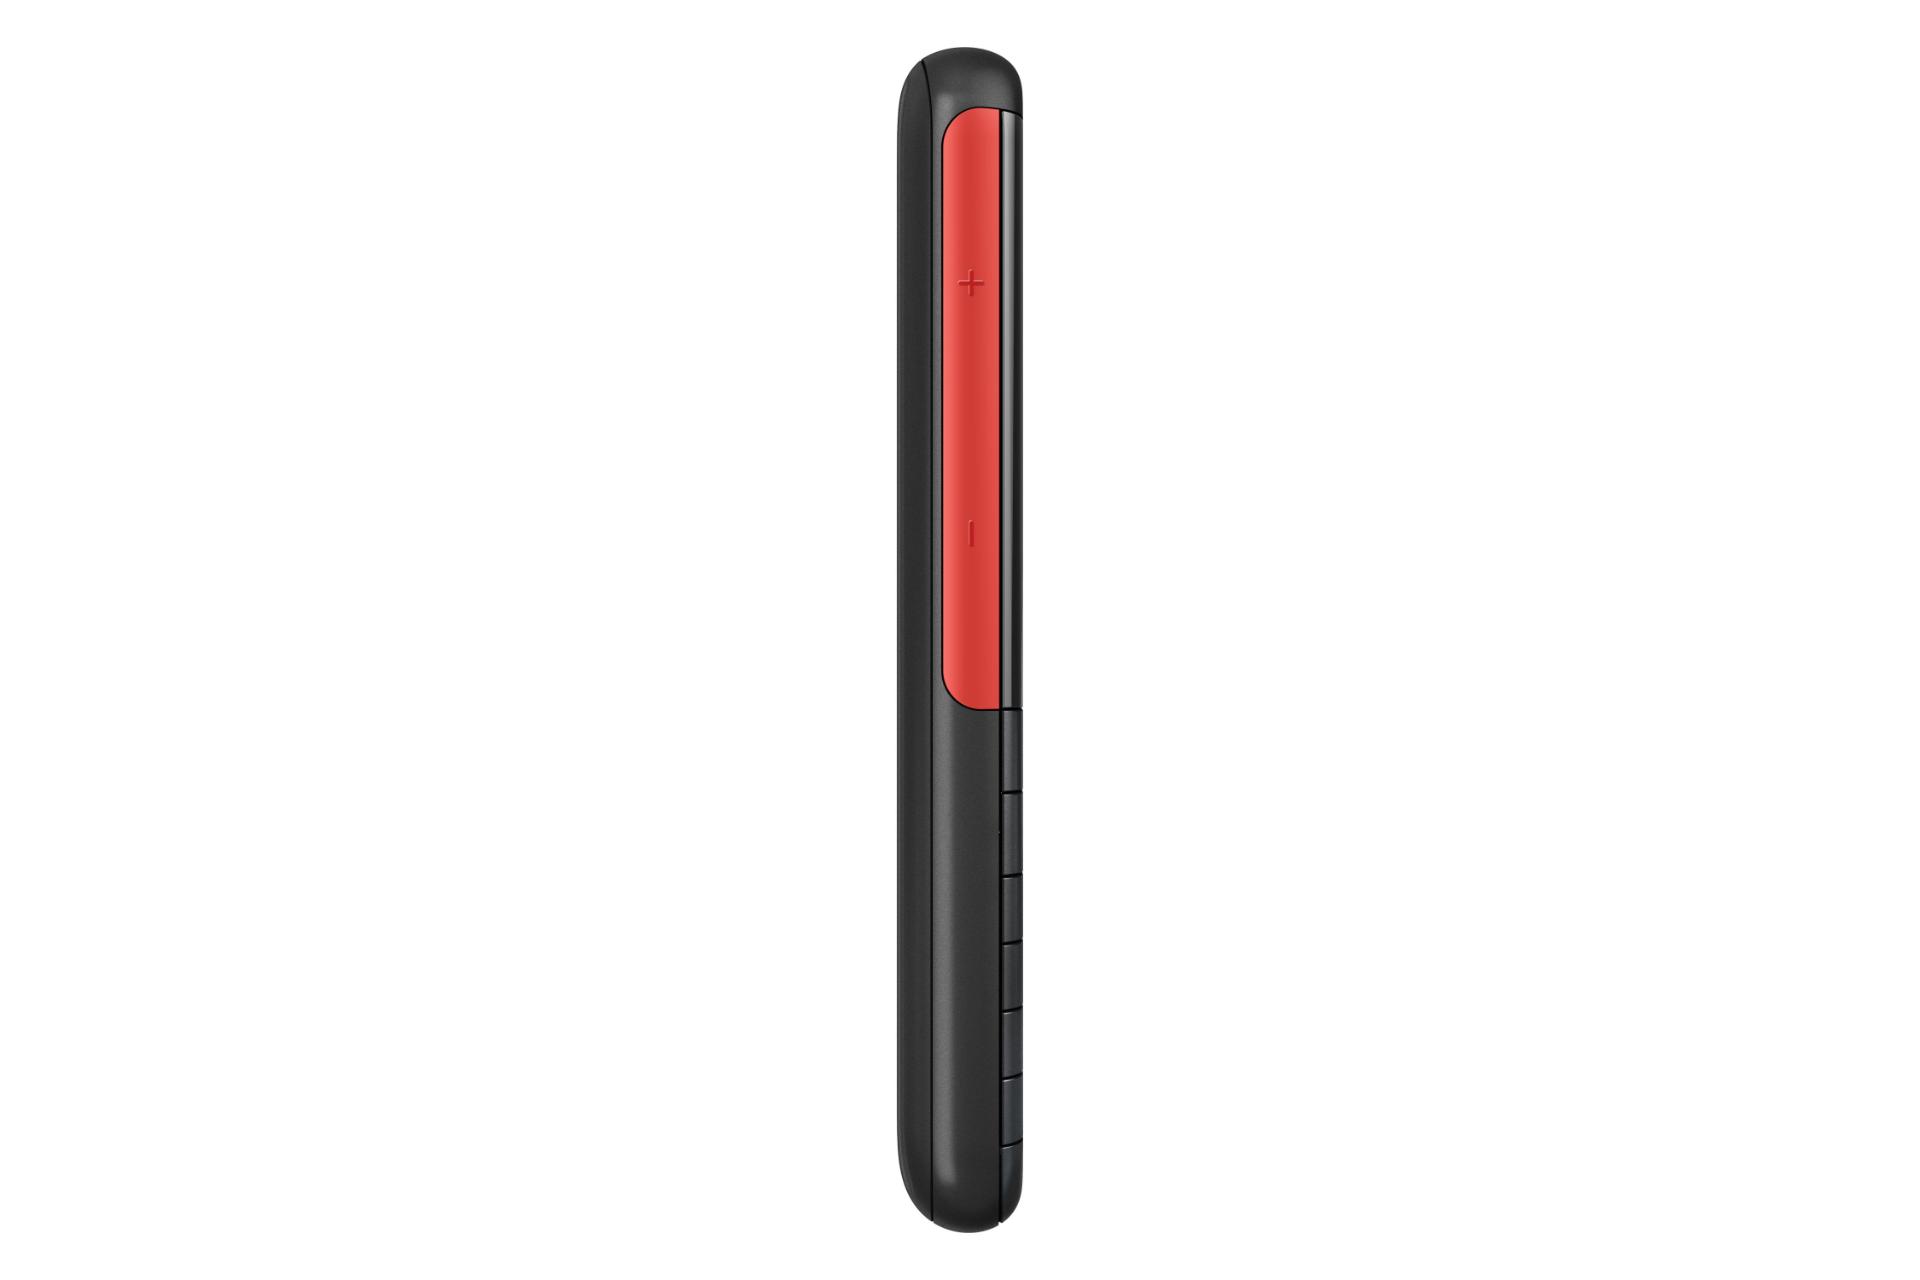 لبه کناری گوشی موبایل نوکیا 5310 نسخه 2024 مشکی و قرمز / Nokia 5310 2024